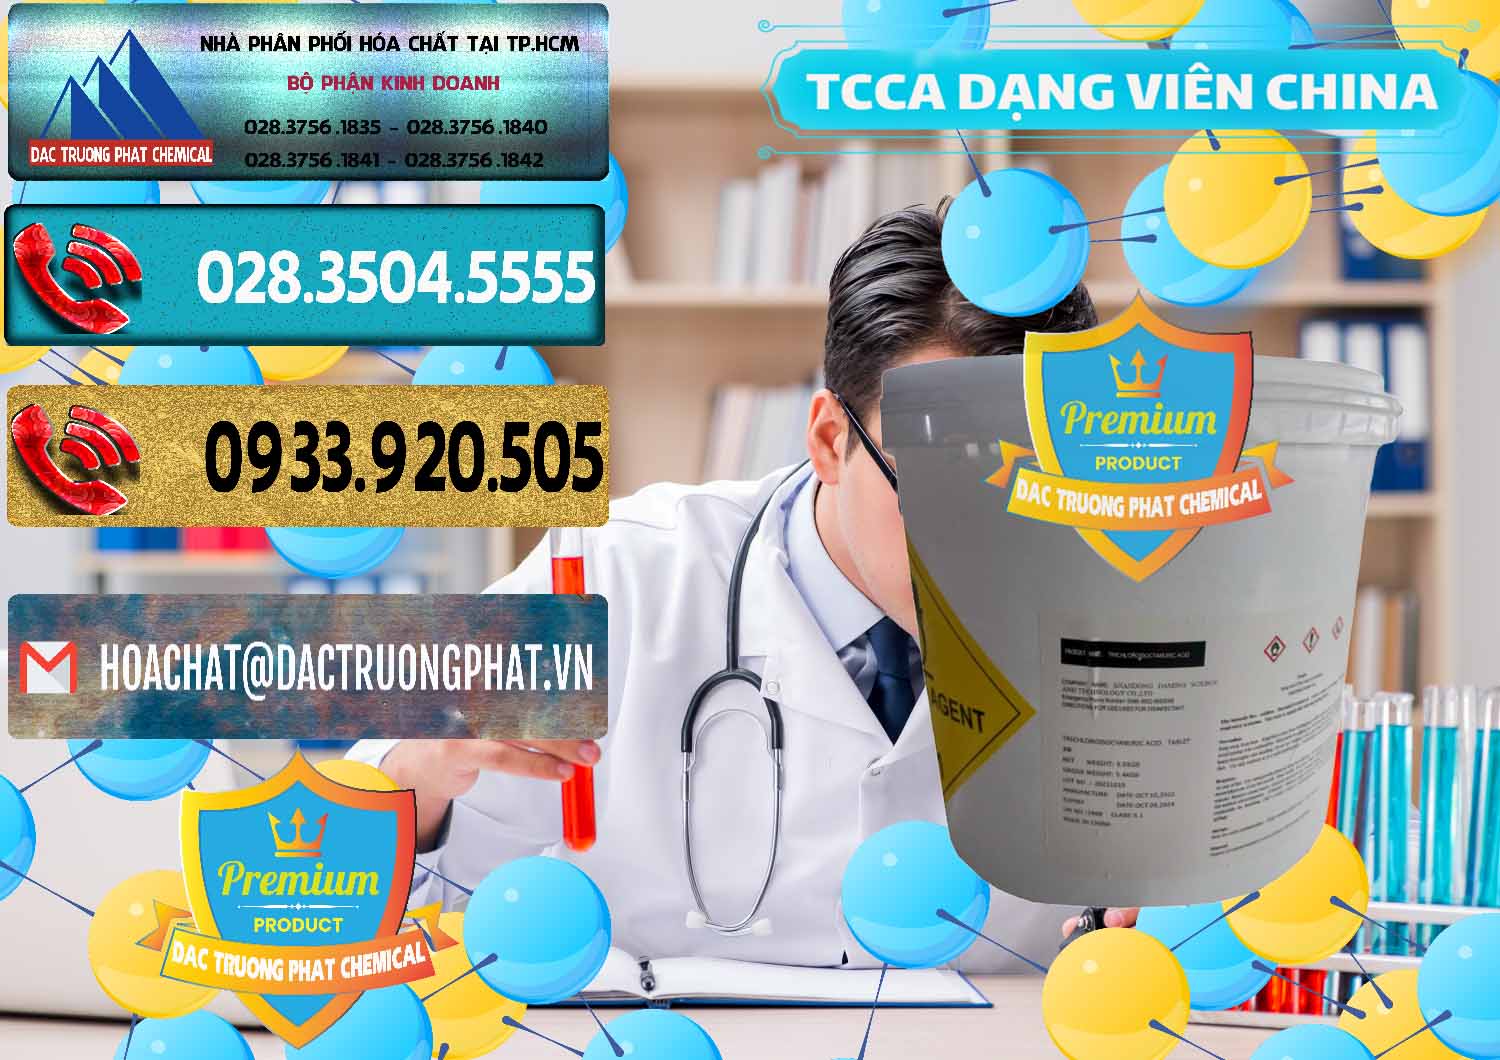 Nơi chuyên bán & cung cấp TCCA - Acid Trichloroisocyanuric Dạng Viên Thùng 5kg Trung Quốc China - 0379 - Công ty cung cấp và nhập khẩu hóa chất tại TP.HCM - hoachatdetnhuom.com